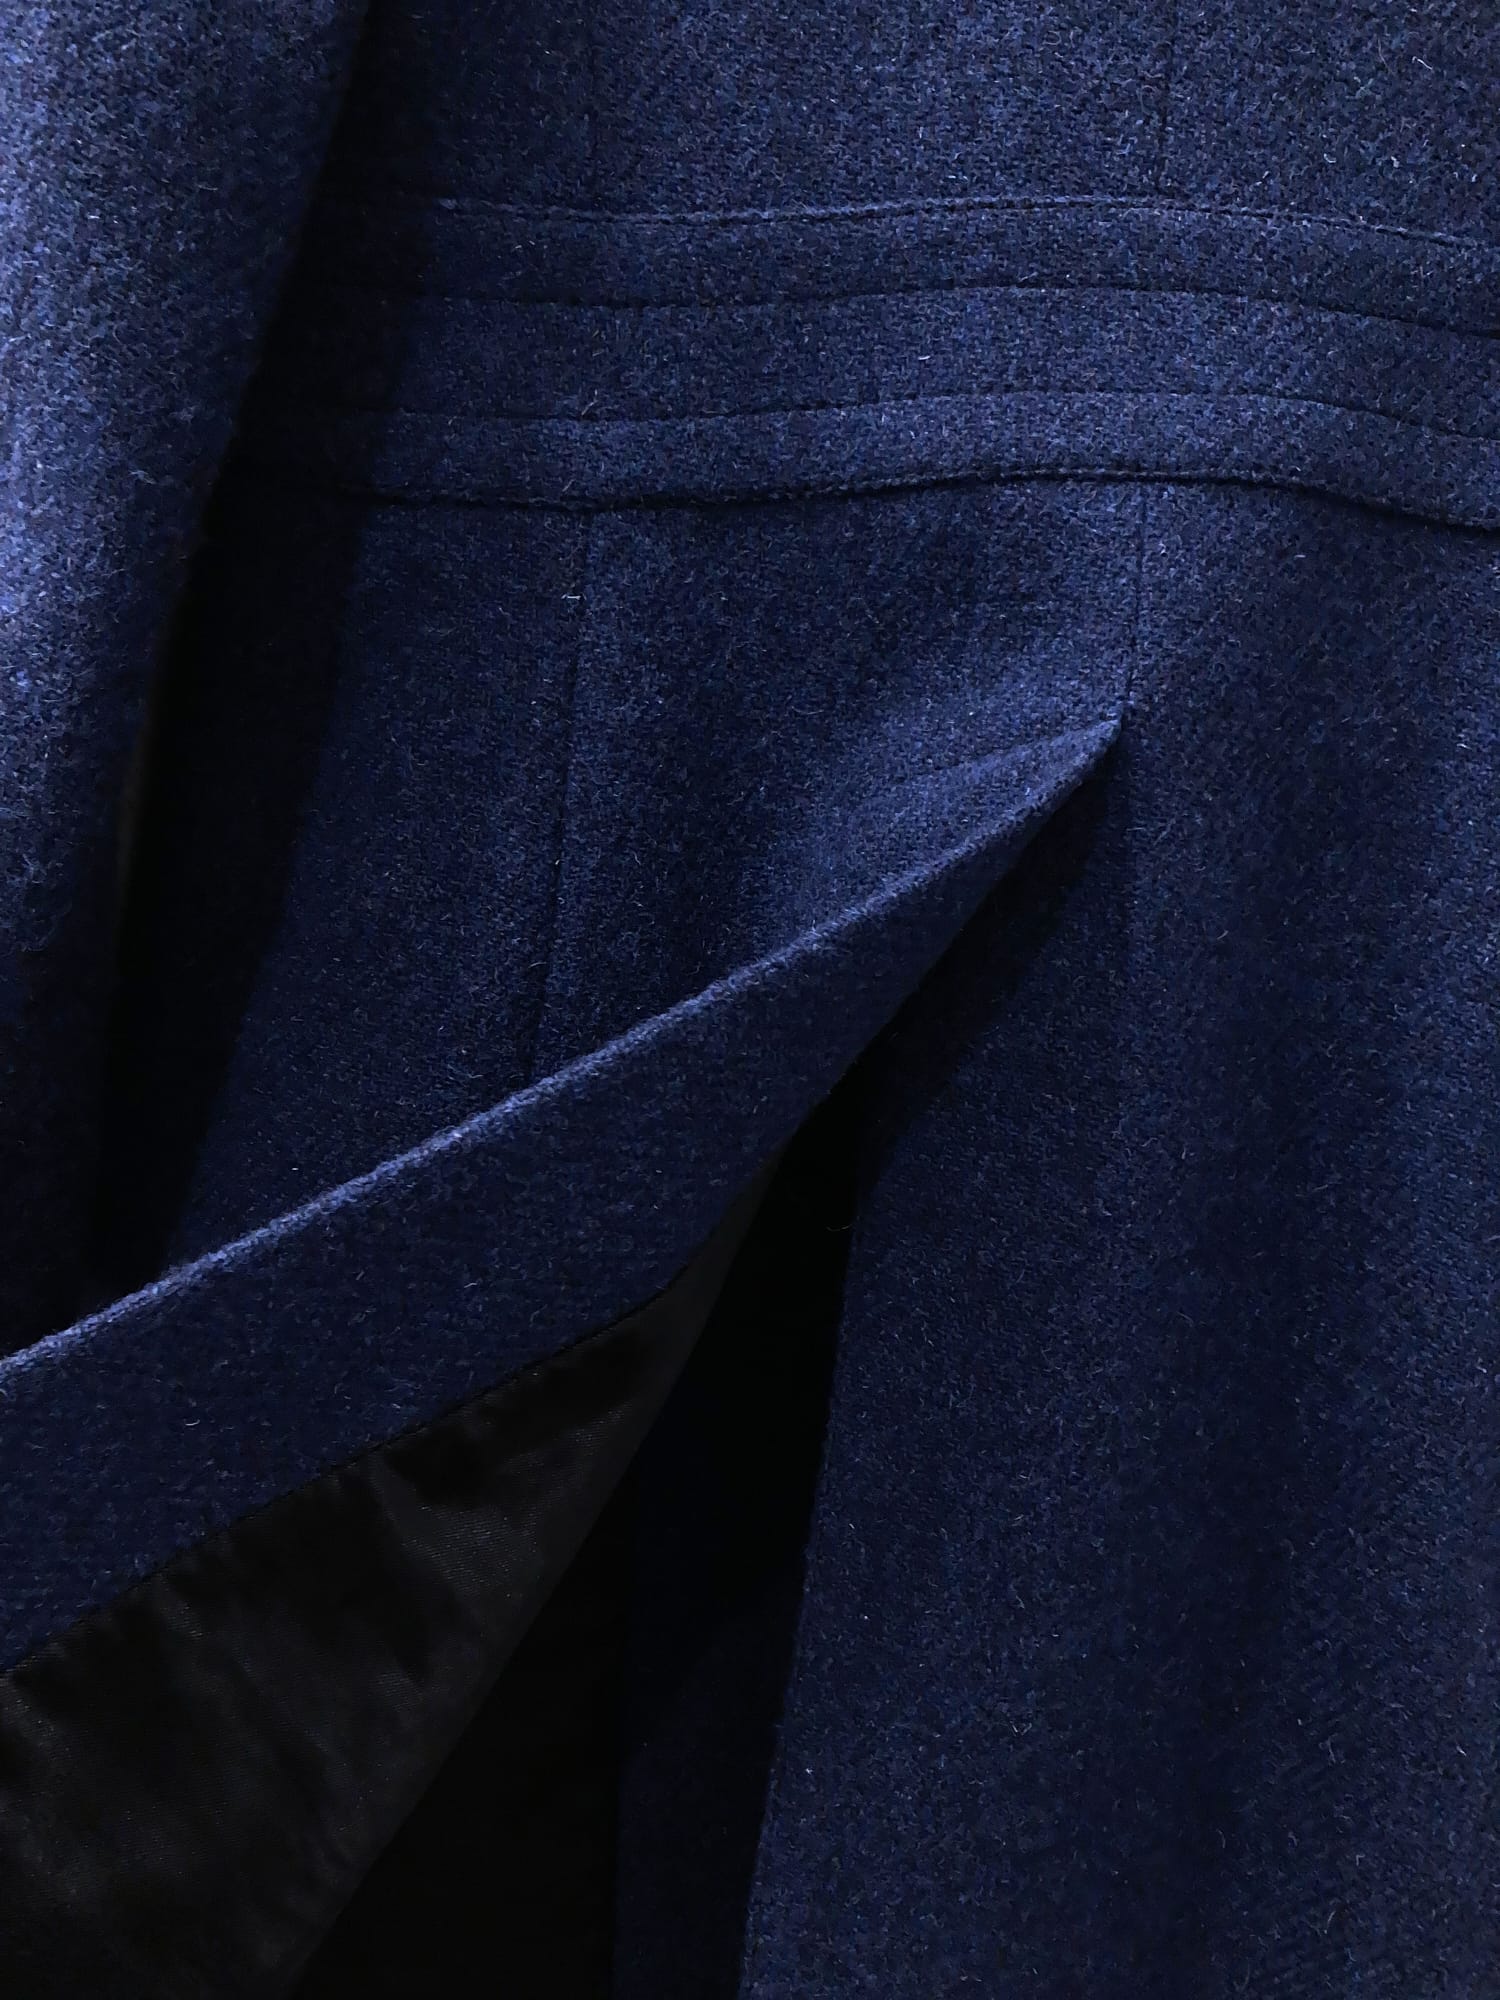 Dirk Bikkembergs 1990s dark blue wool Harris Tweed coat with large peak lapels